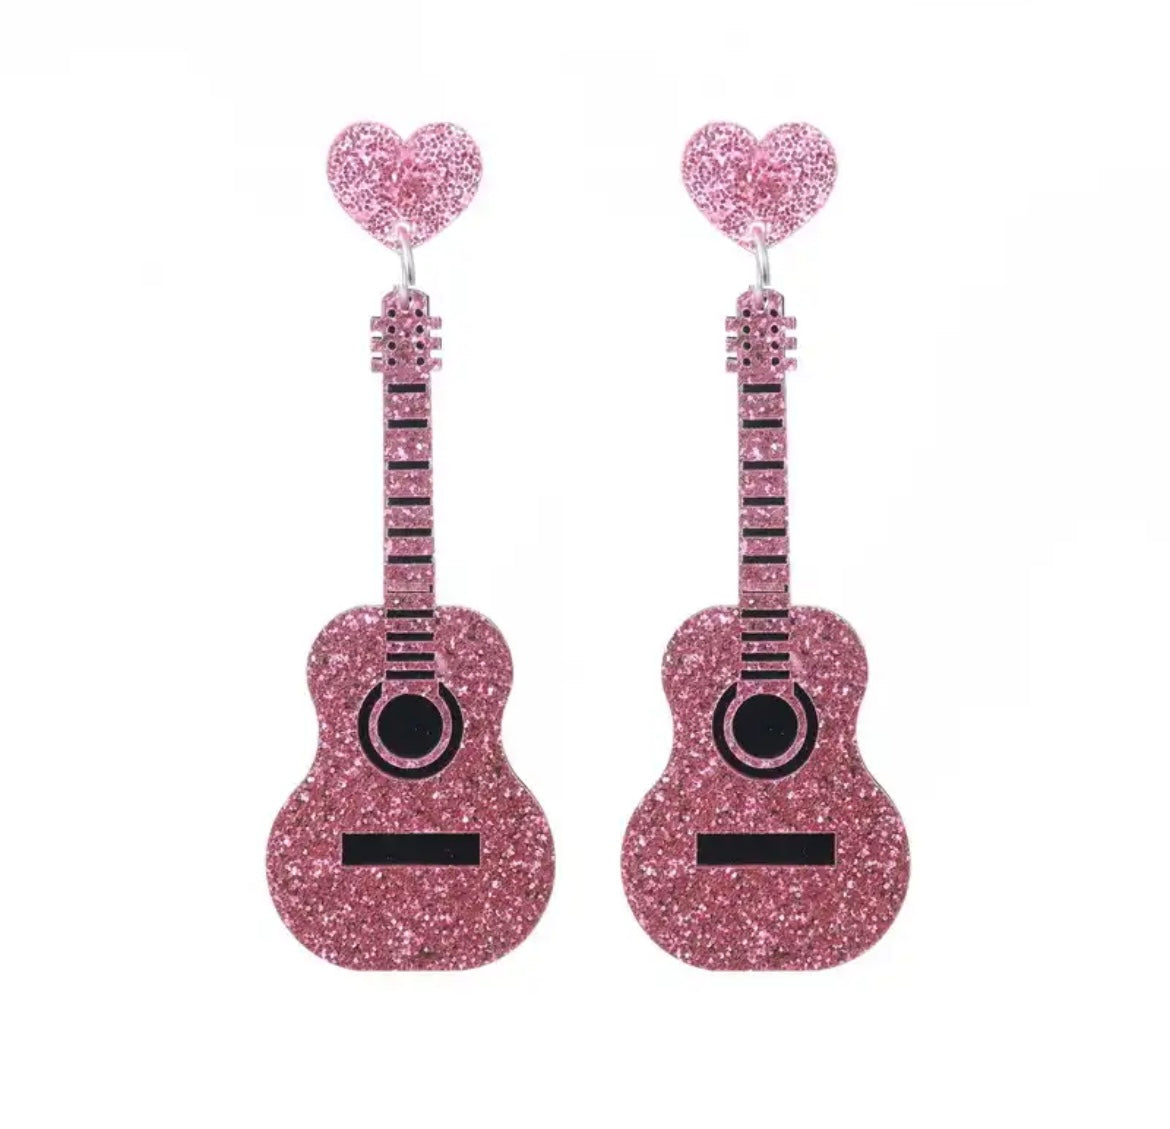 Taylor’s Pink or Black Guitar Earrings